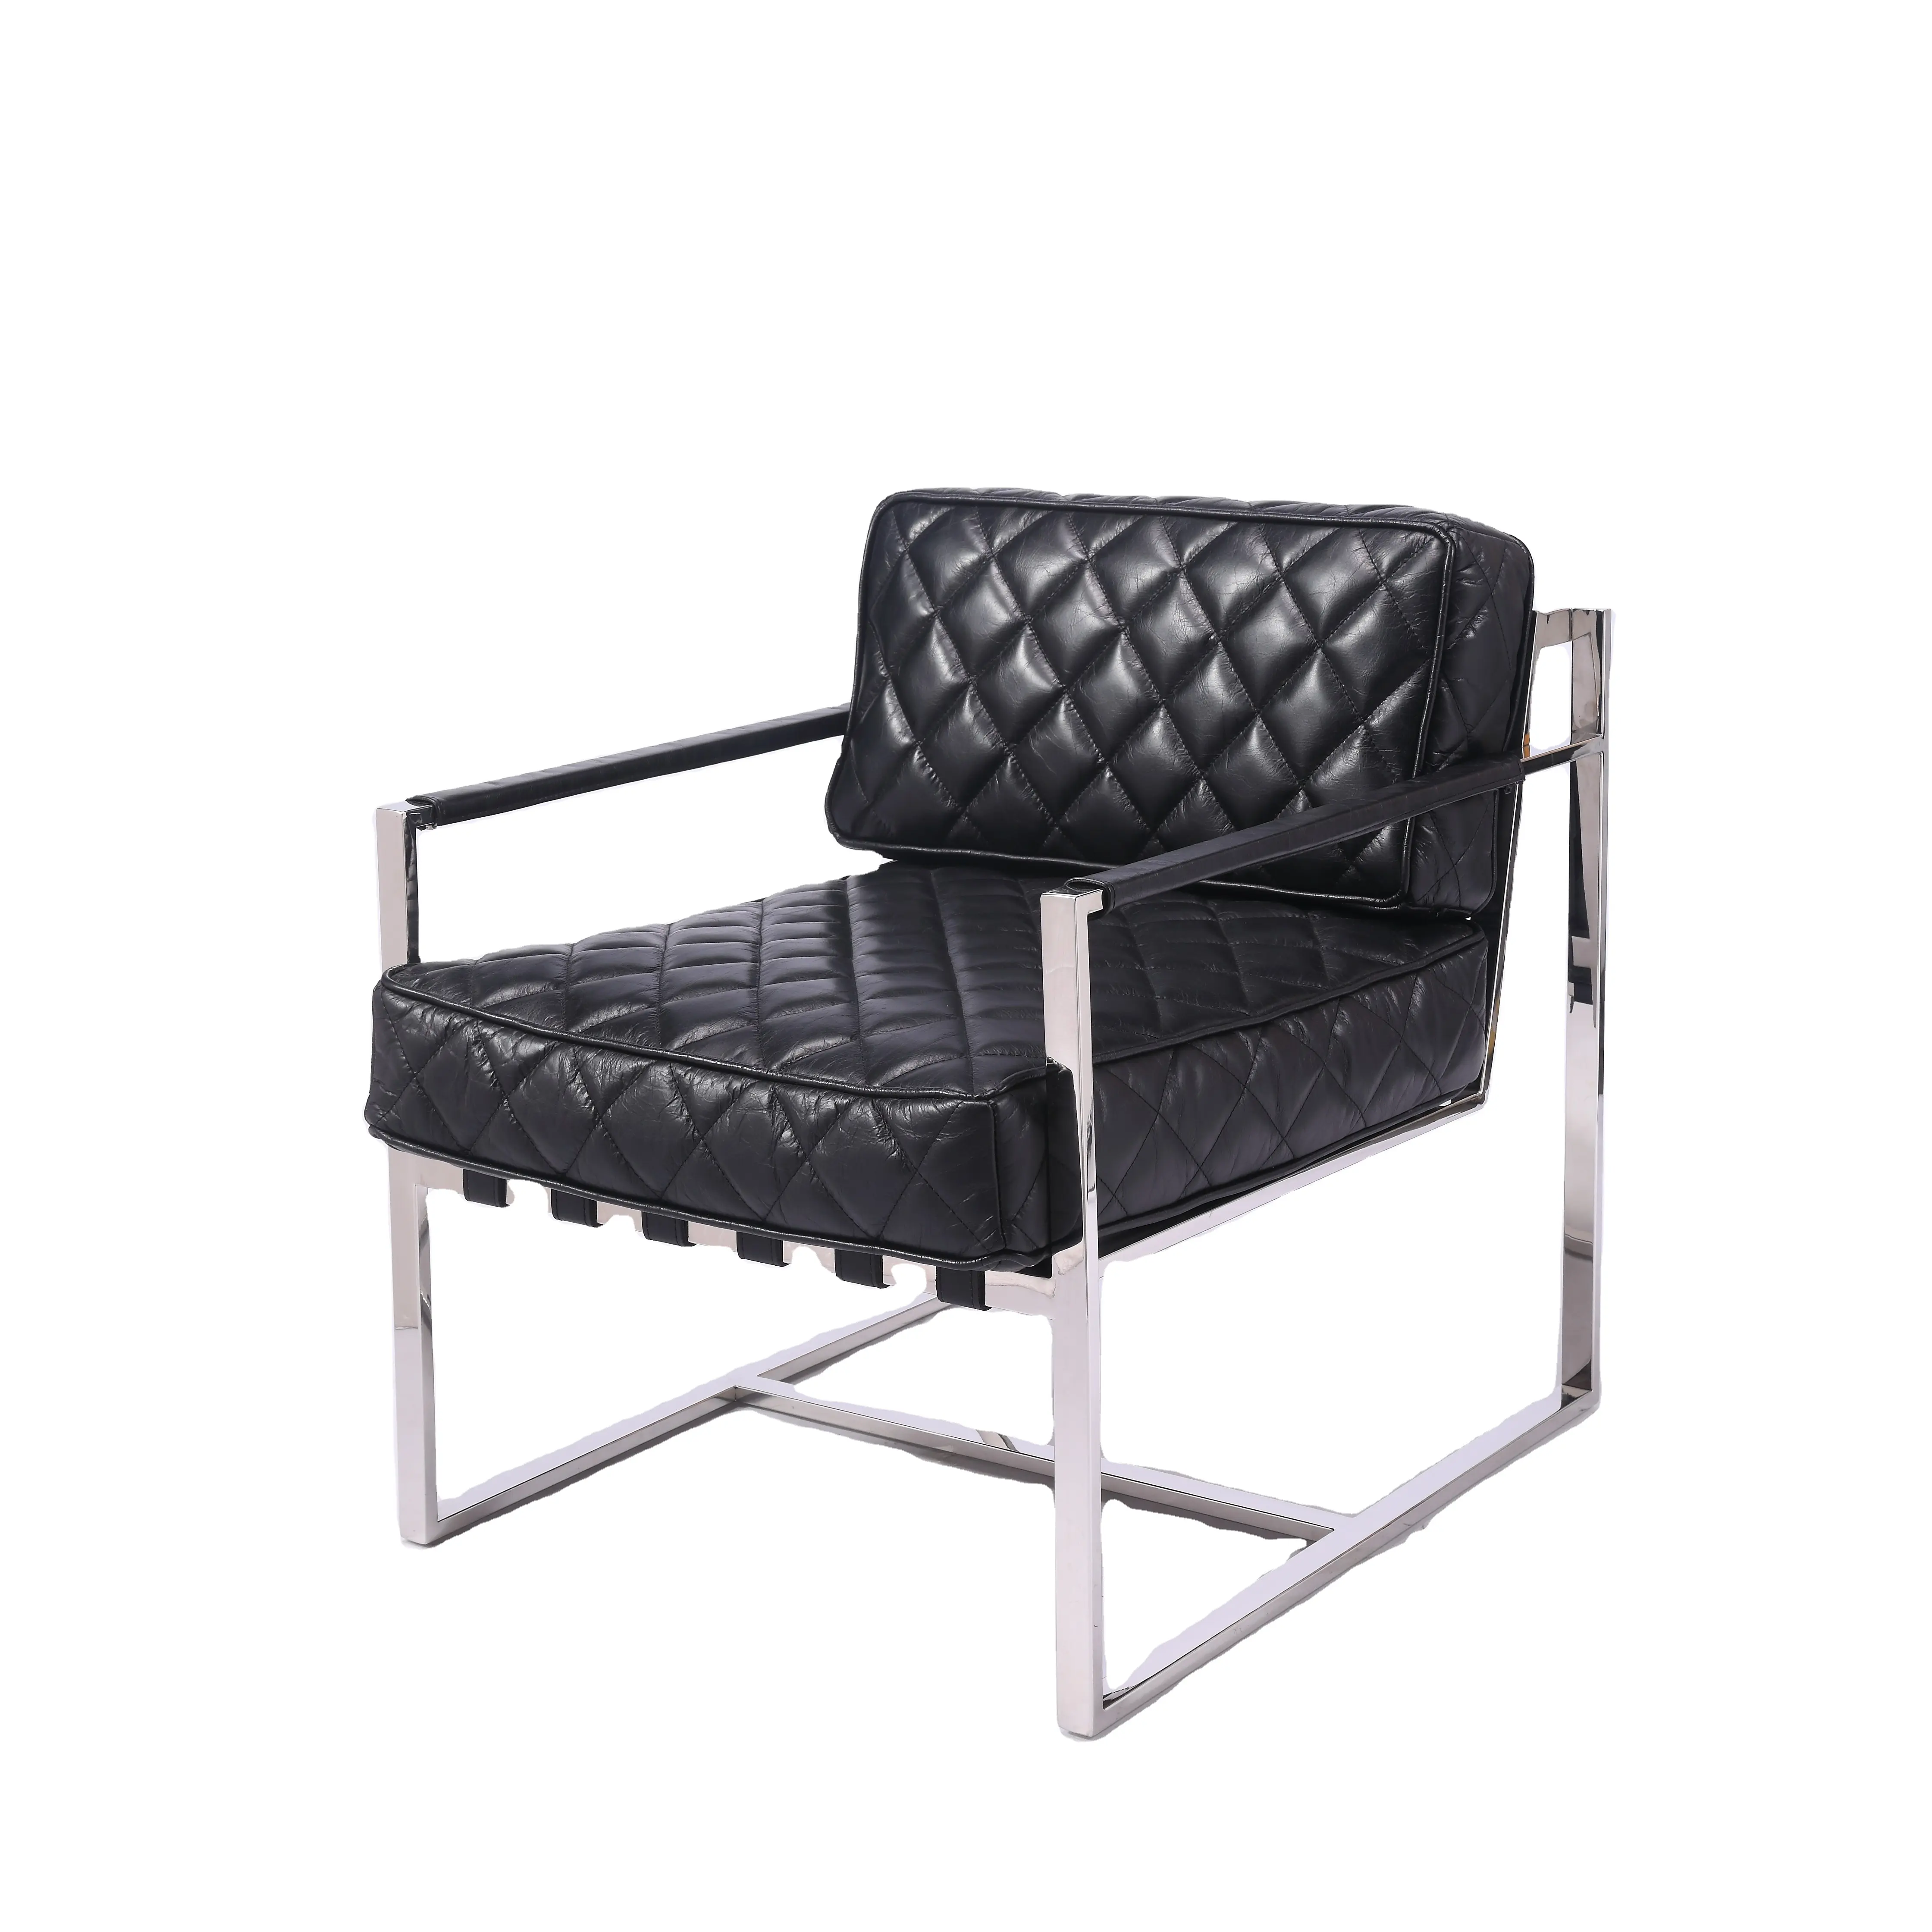 Silla de sofá individual de diseño moderno en cuero Retro negro antiguo silla individual informal para sala de estar balcón dormitorio uso al aire libre